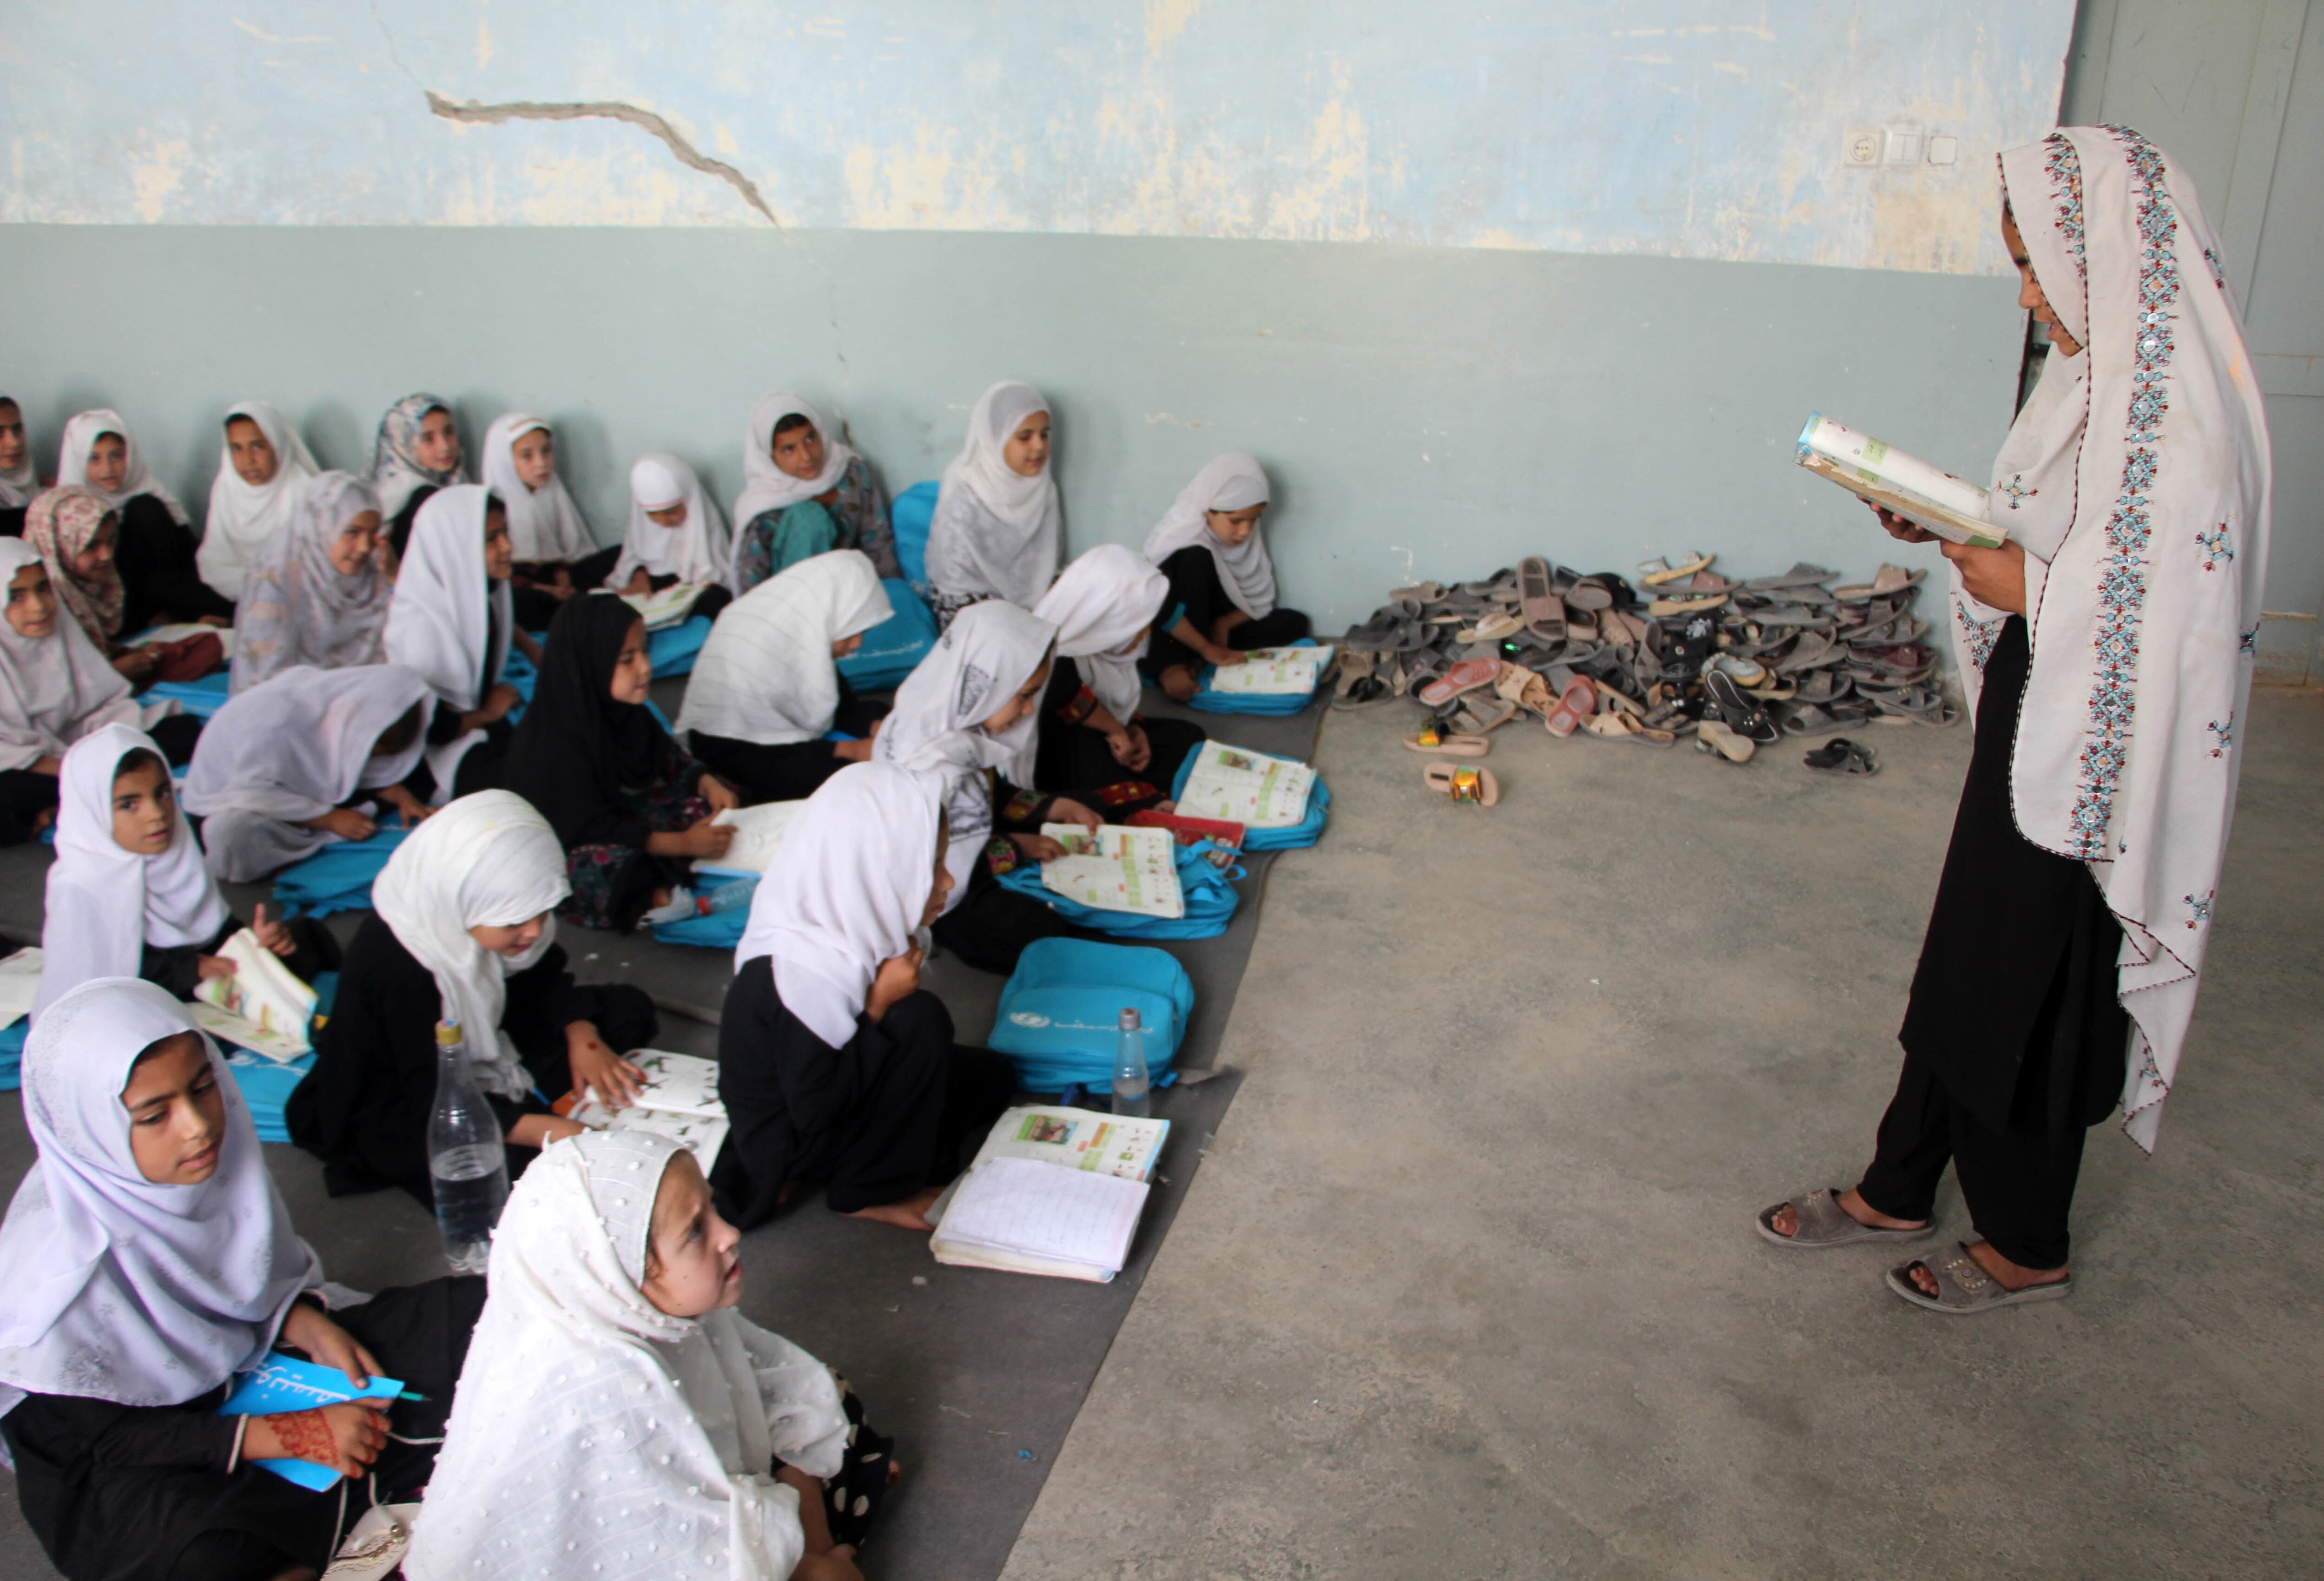 Niñas afganas asisten a la escuela primaria en Kandahar (Afganistán) pese a la prohibición de los talibanes. Dos años después de la medida, muchas niñas han recurrido a asistir a escuelas religiosas como única opción. 